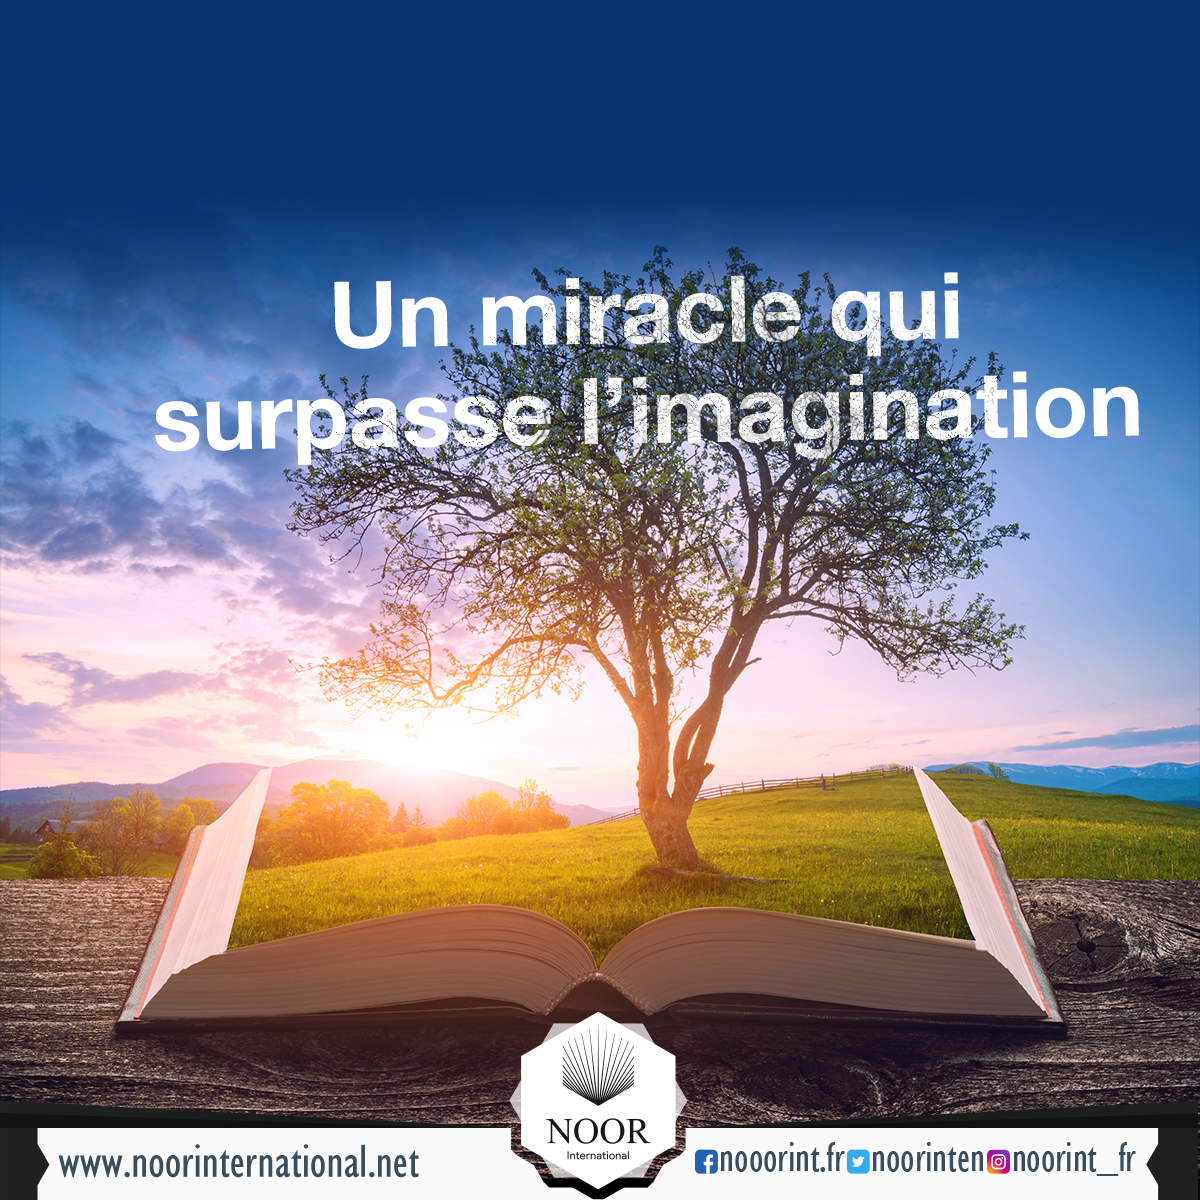 Un miracle qui surpasse l’imagination